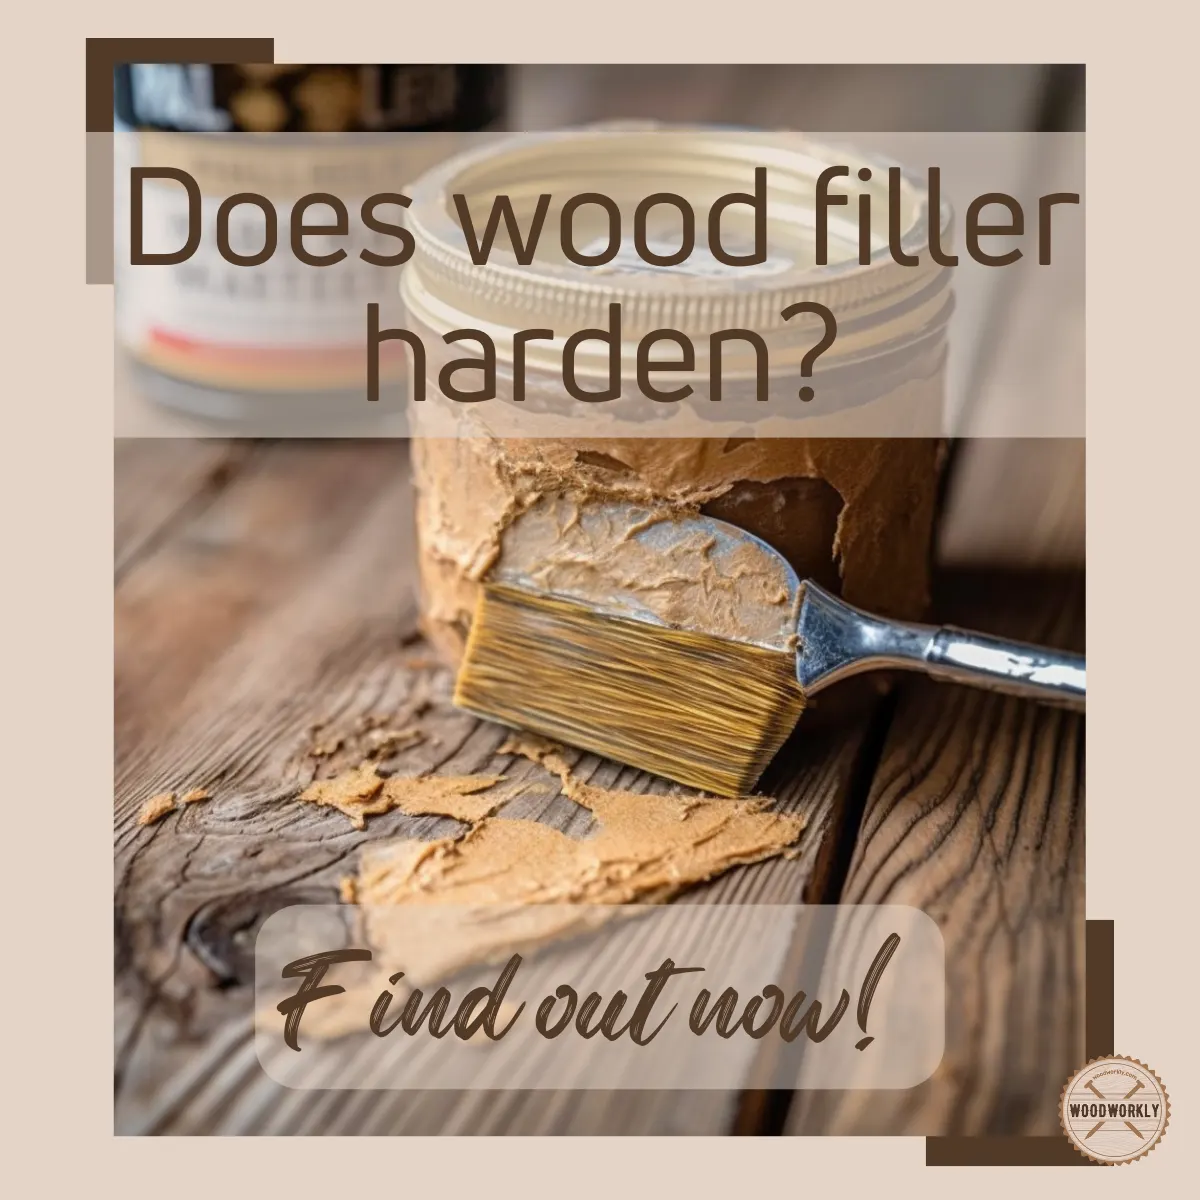 Does wood filler harden